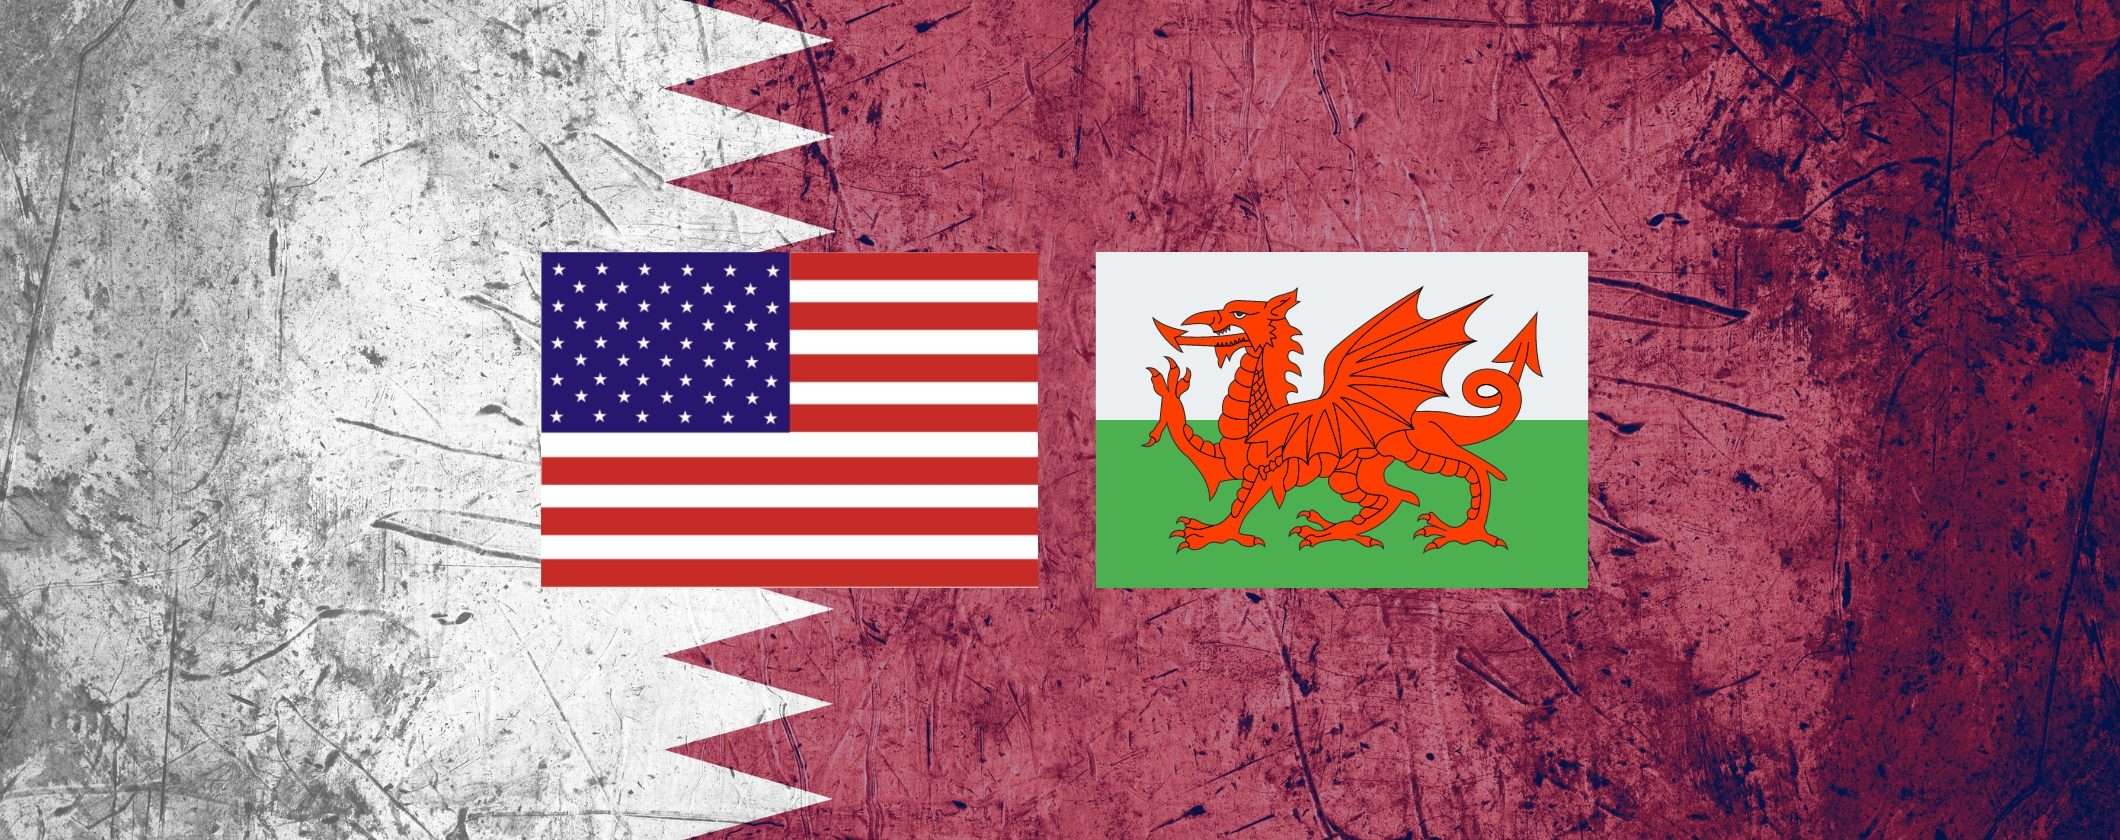 Qatar 2022: come vedere USA-Galles in streaming senza limitazioni